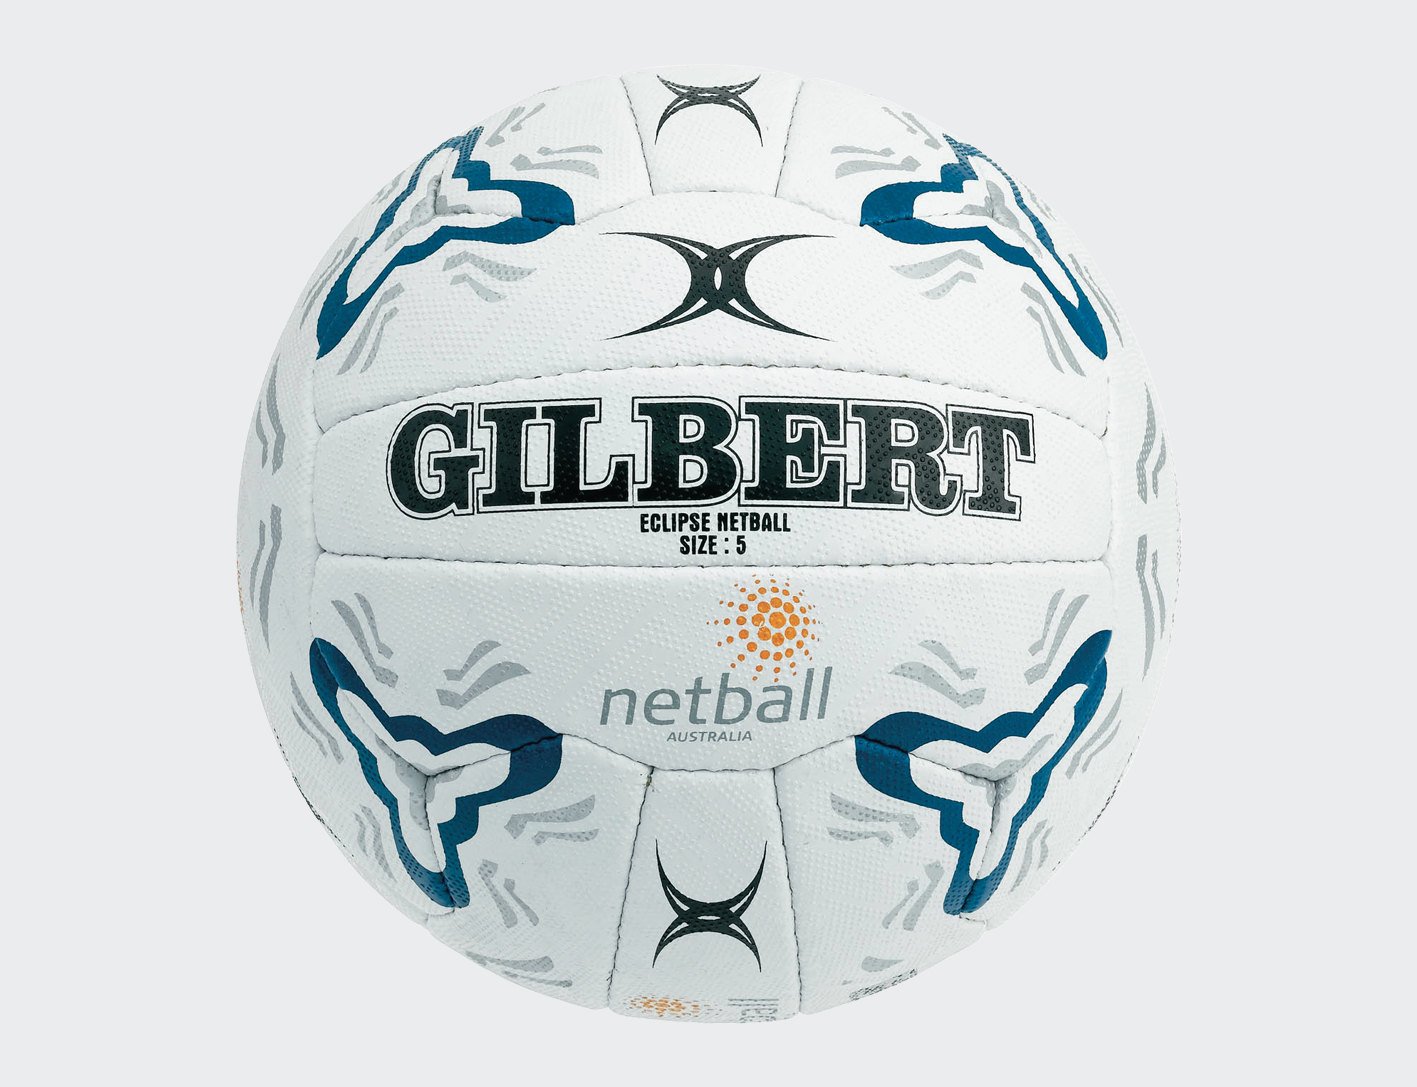 Netball Gilbert Eclipse Match Size 5